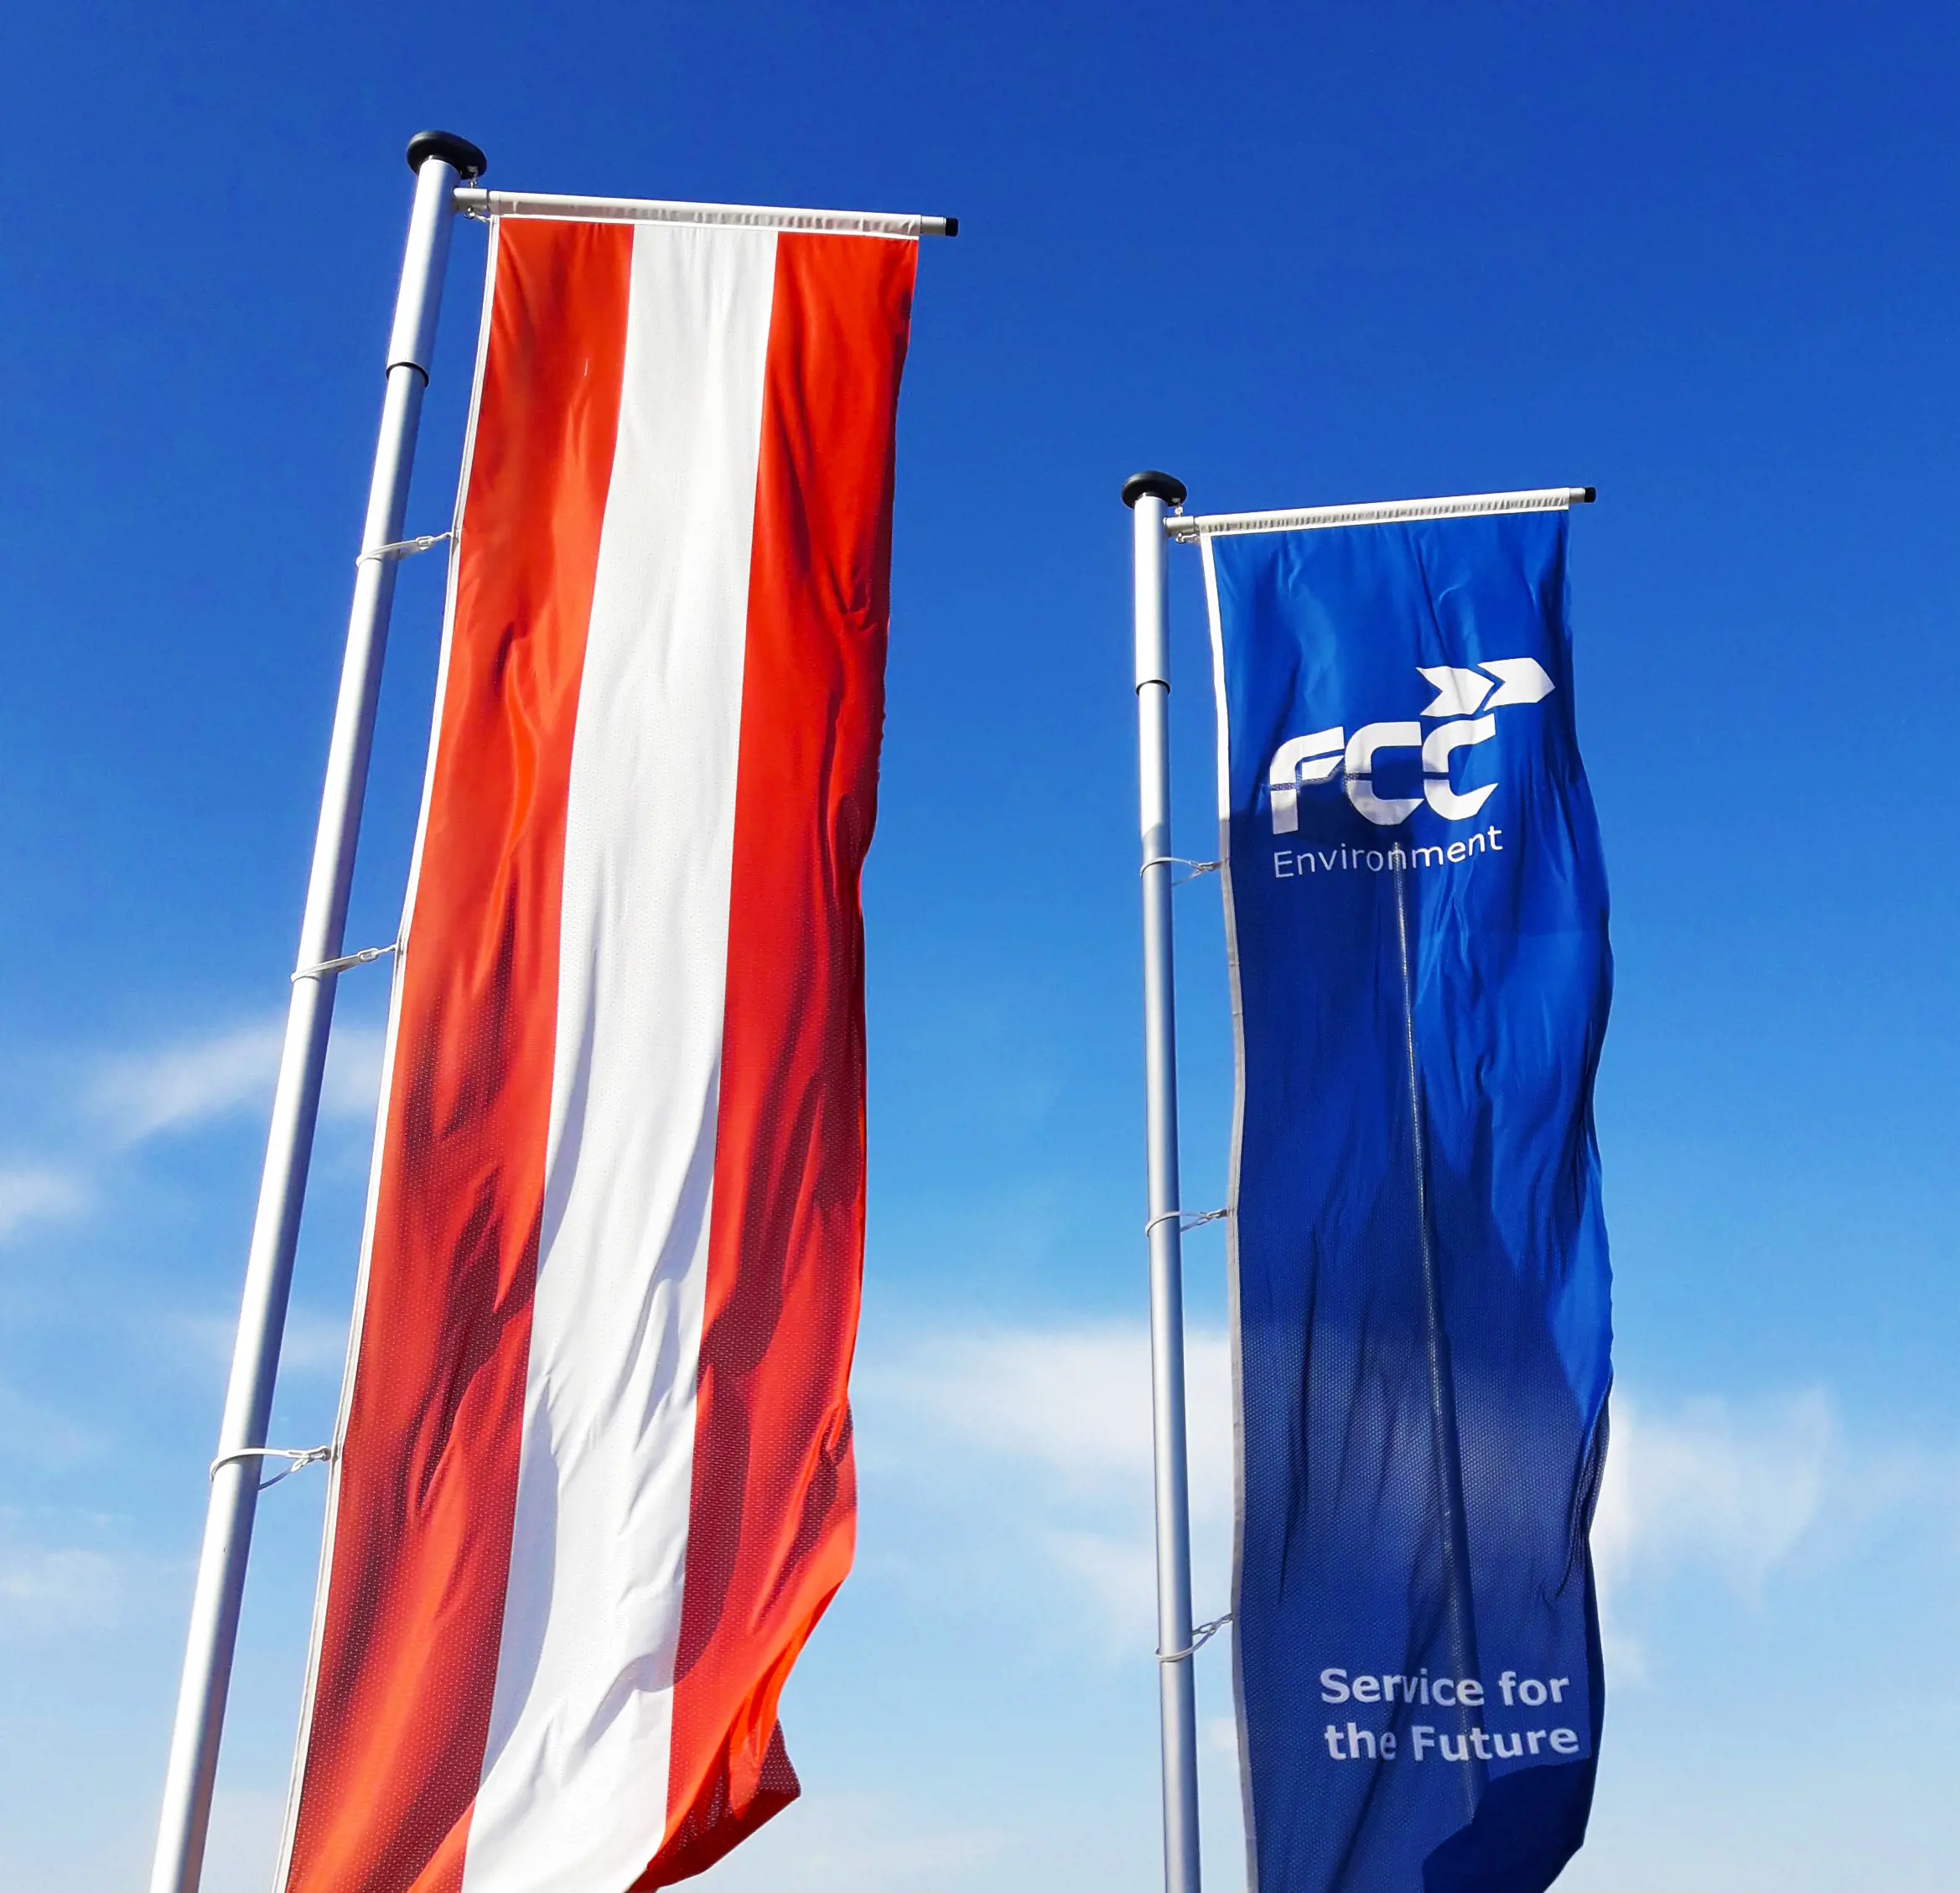 FCC Austria